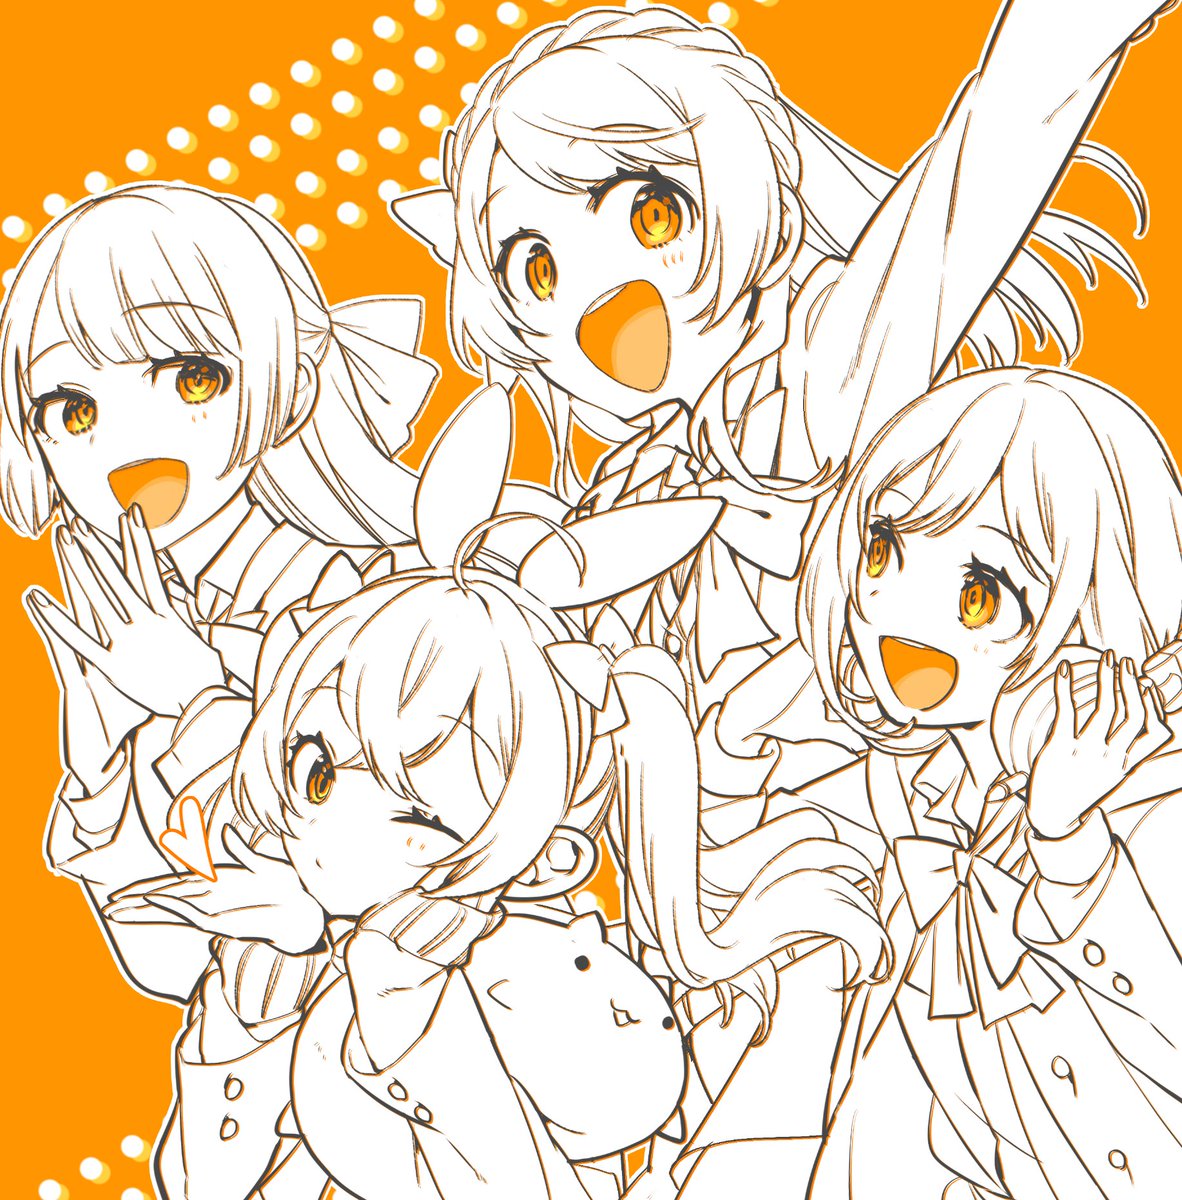 multiple girls 4girls one eye closed smile bow braid orange background  illustration images